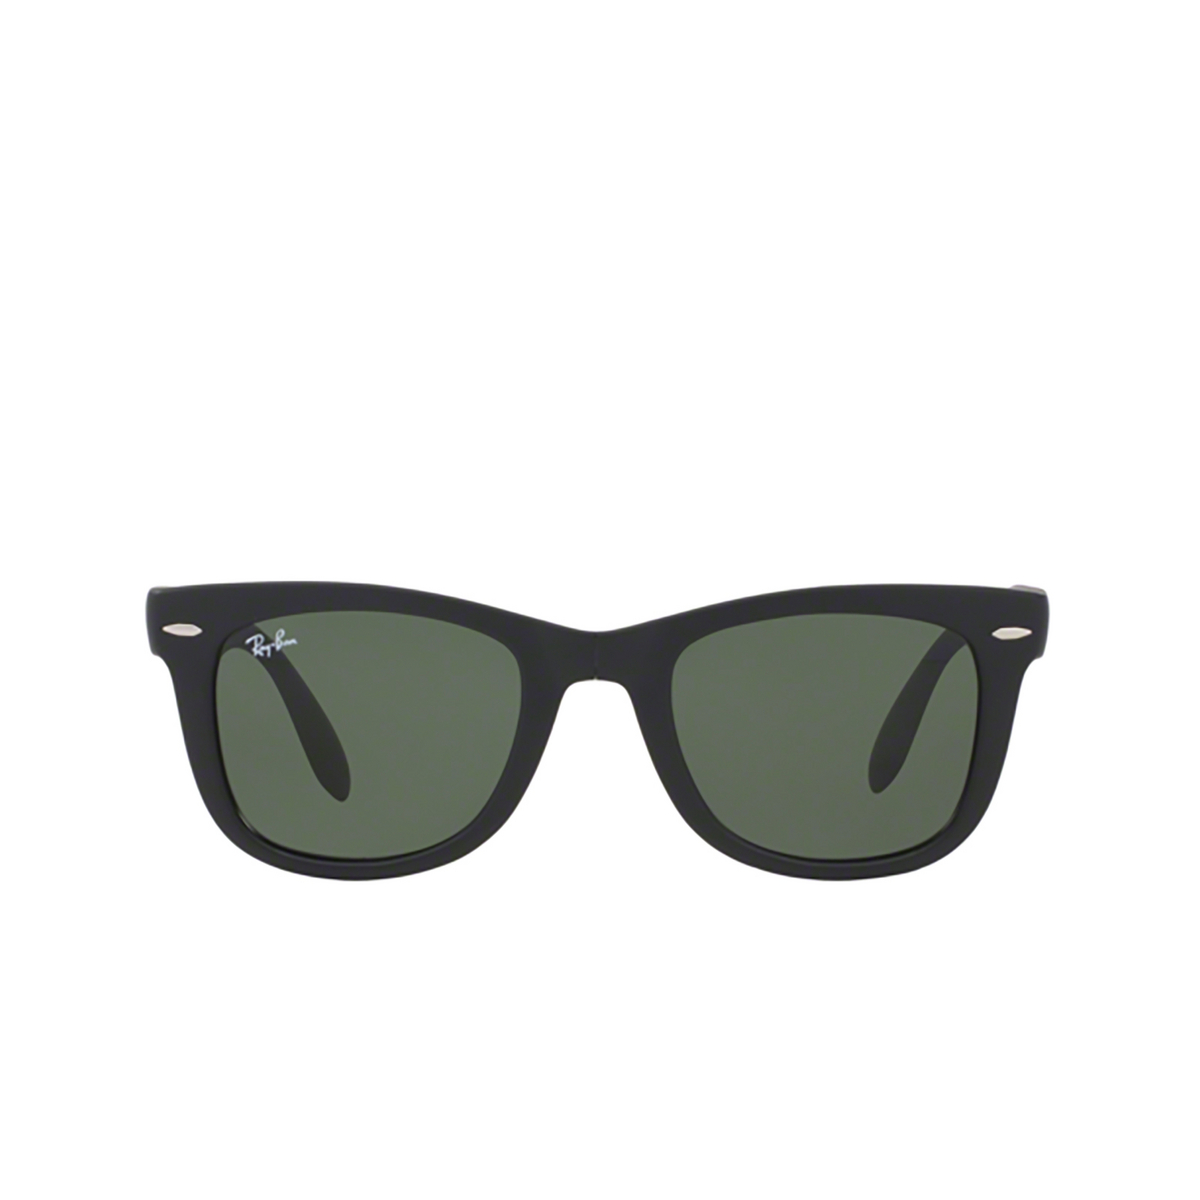 Ray-Ban FOLDING WAYFARER Sunglasses 601S MATTE BLACK - front view